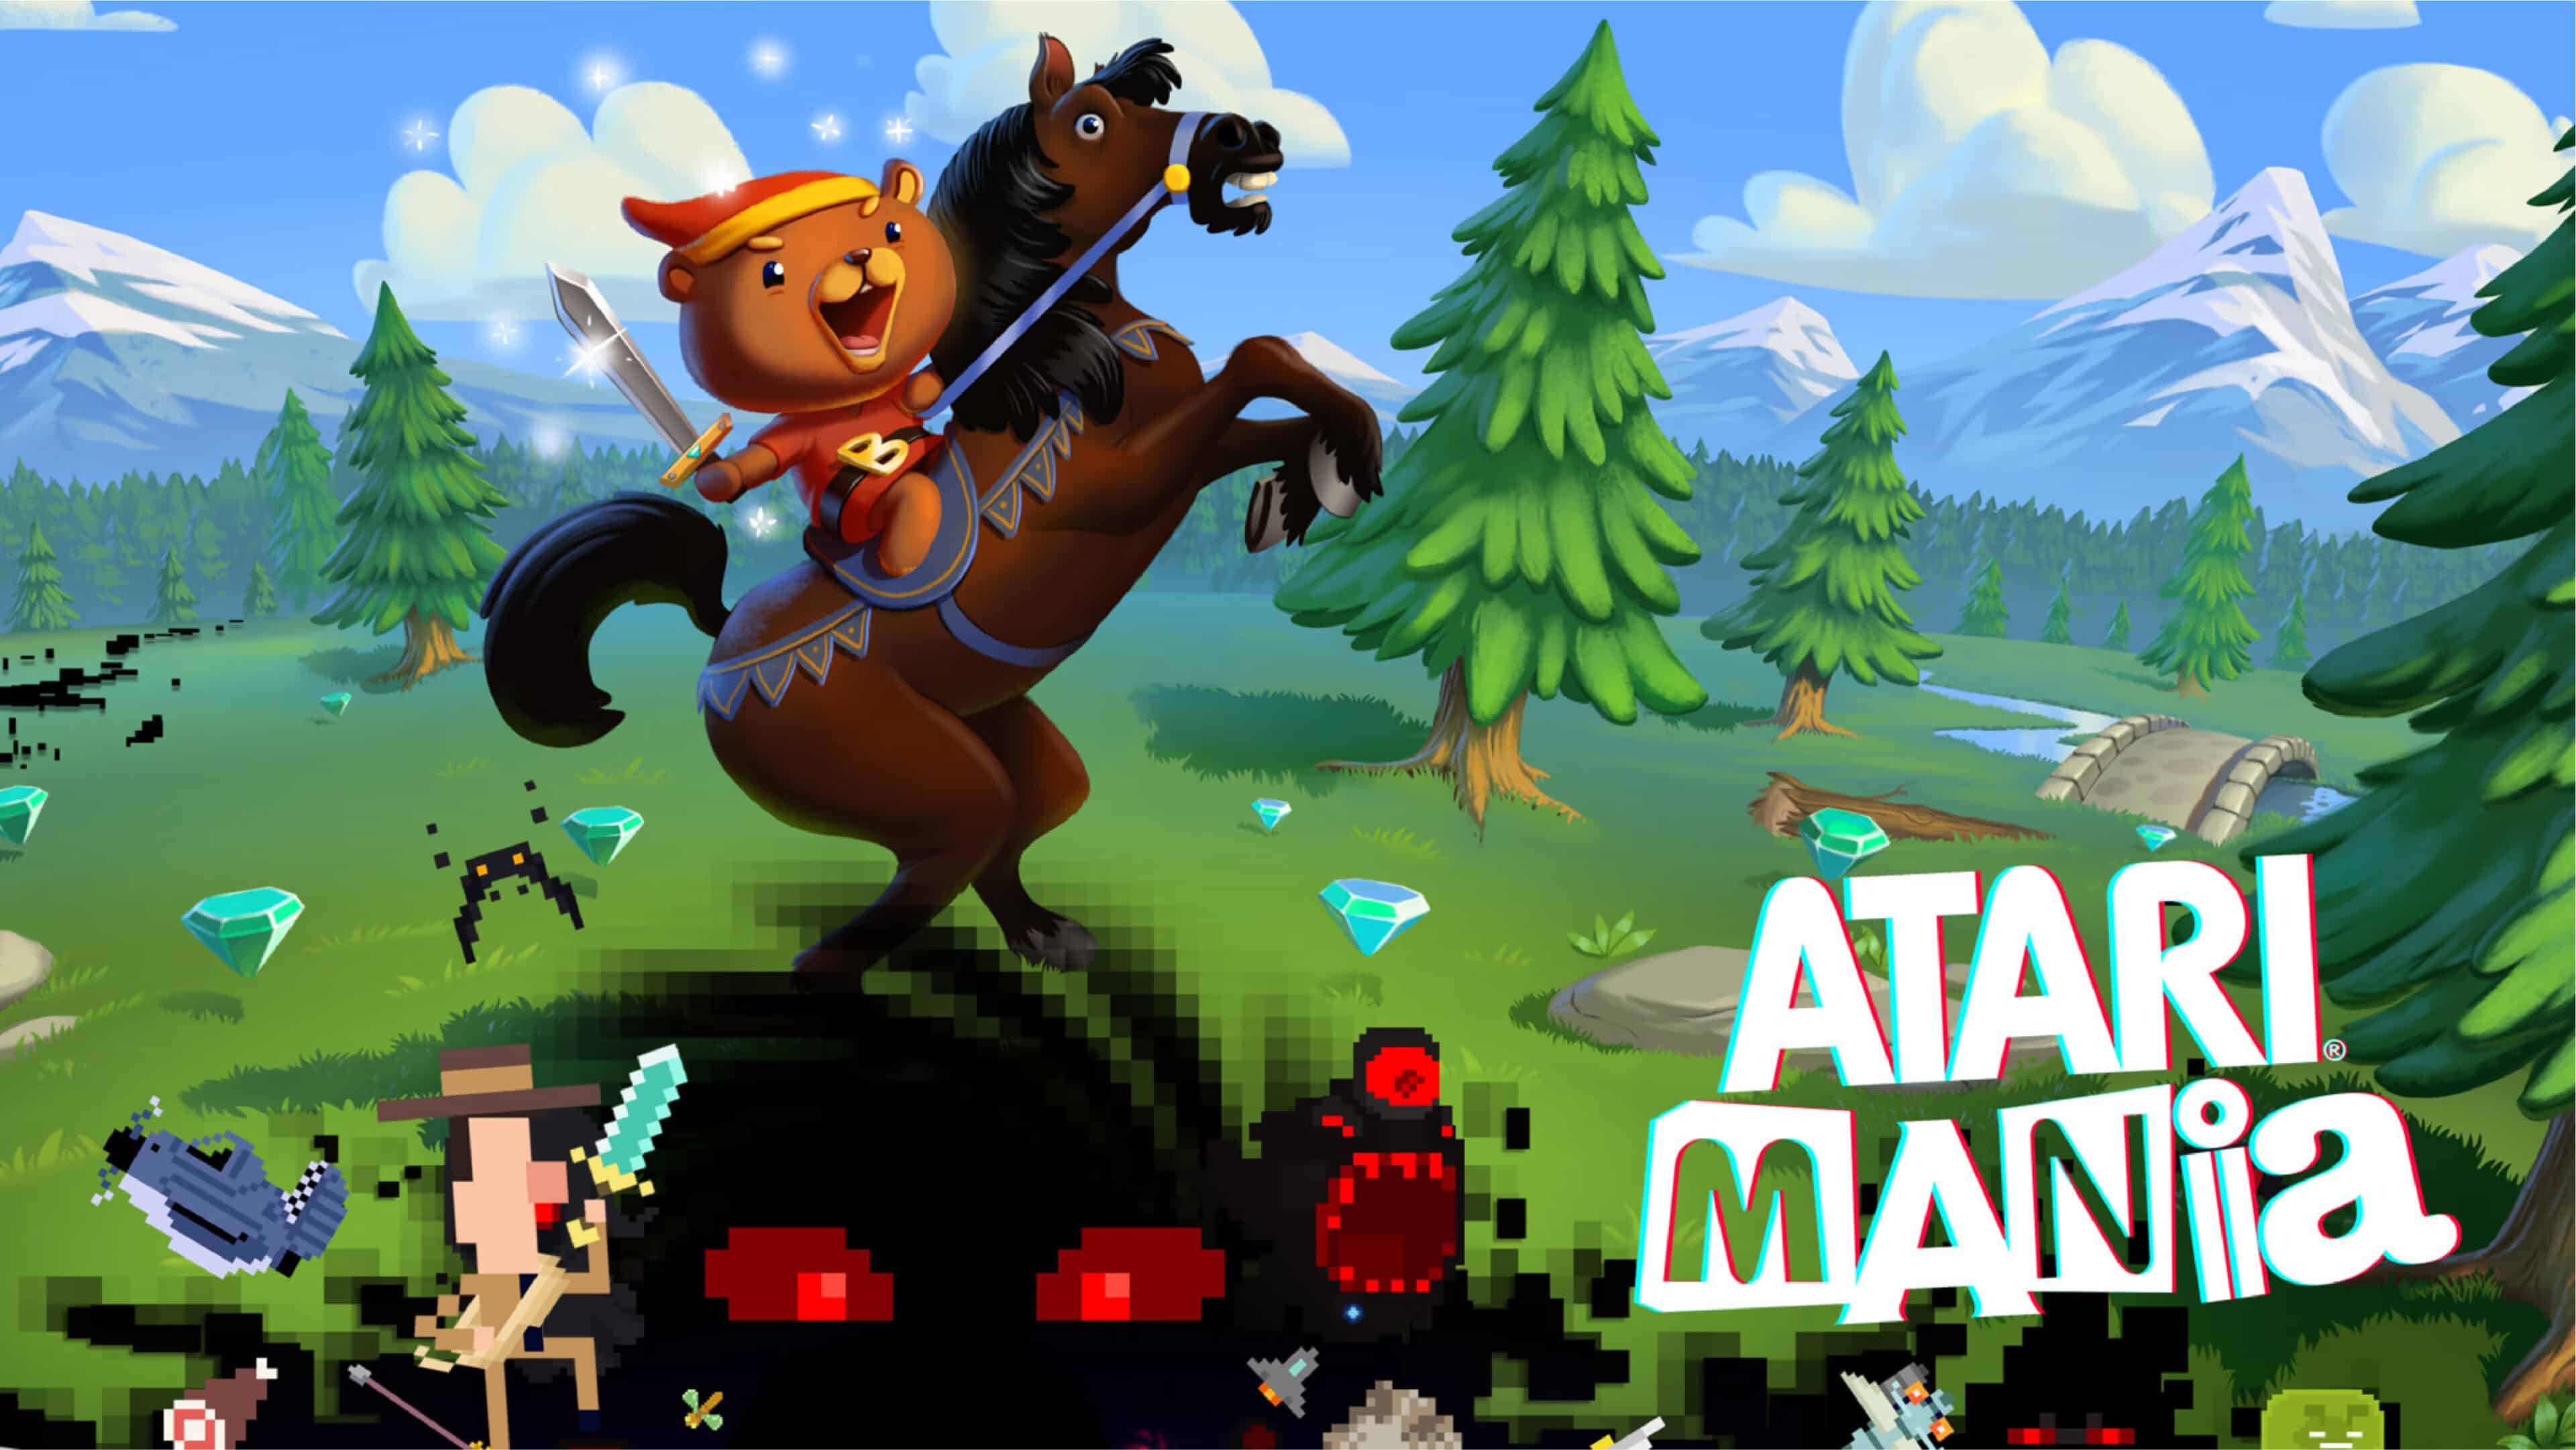 Atari Mania Review